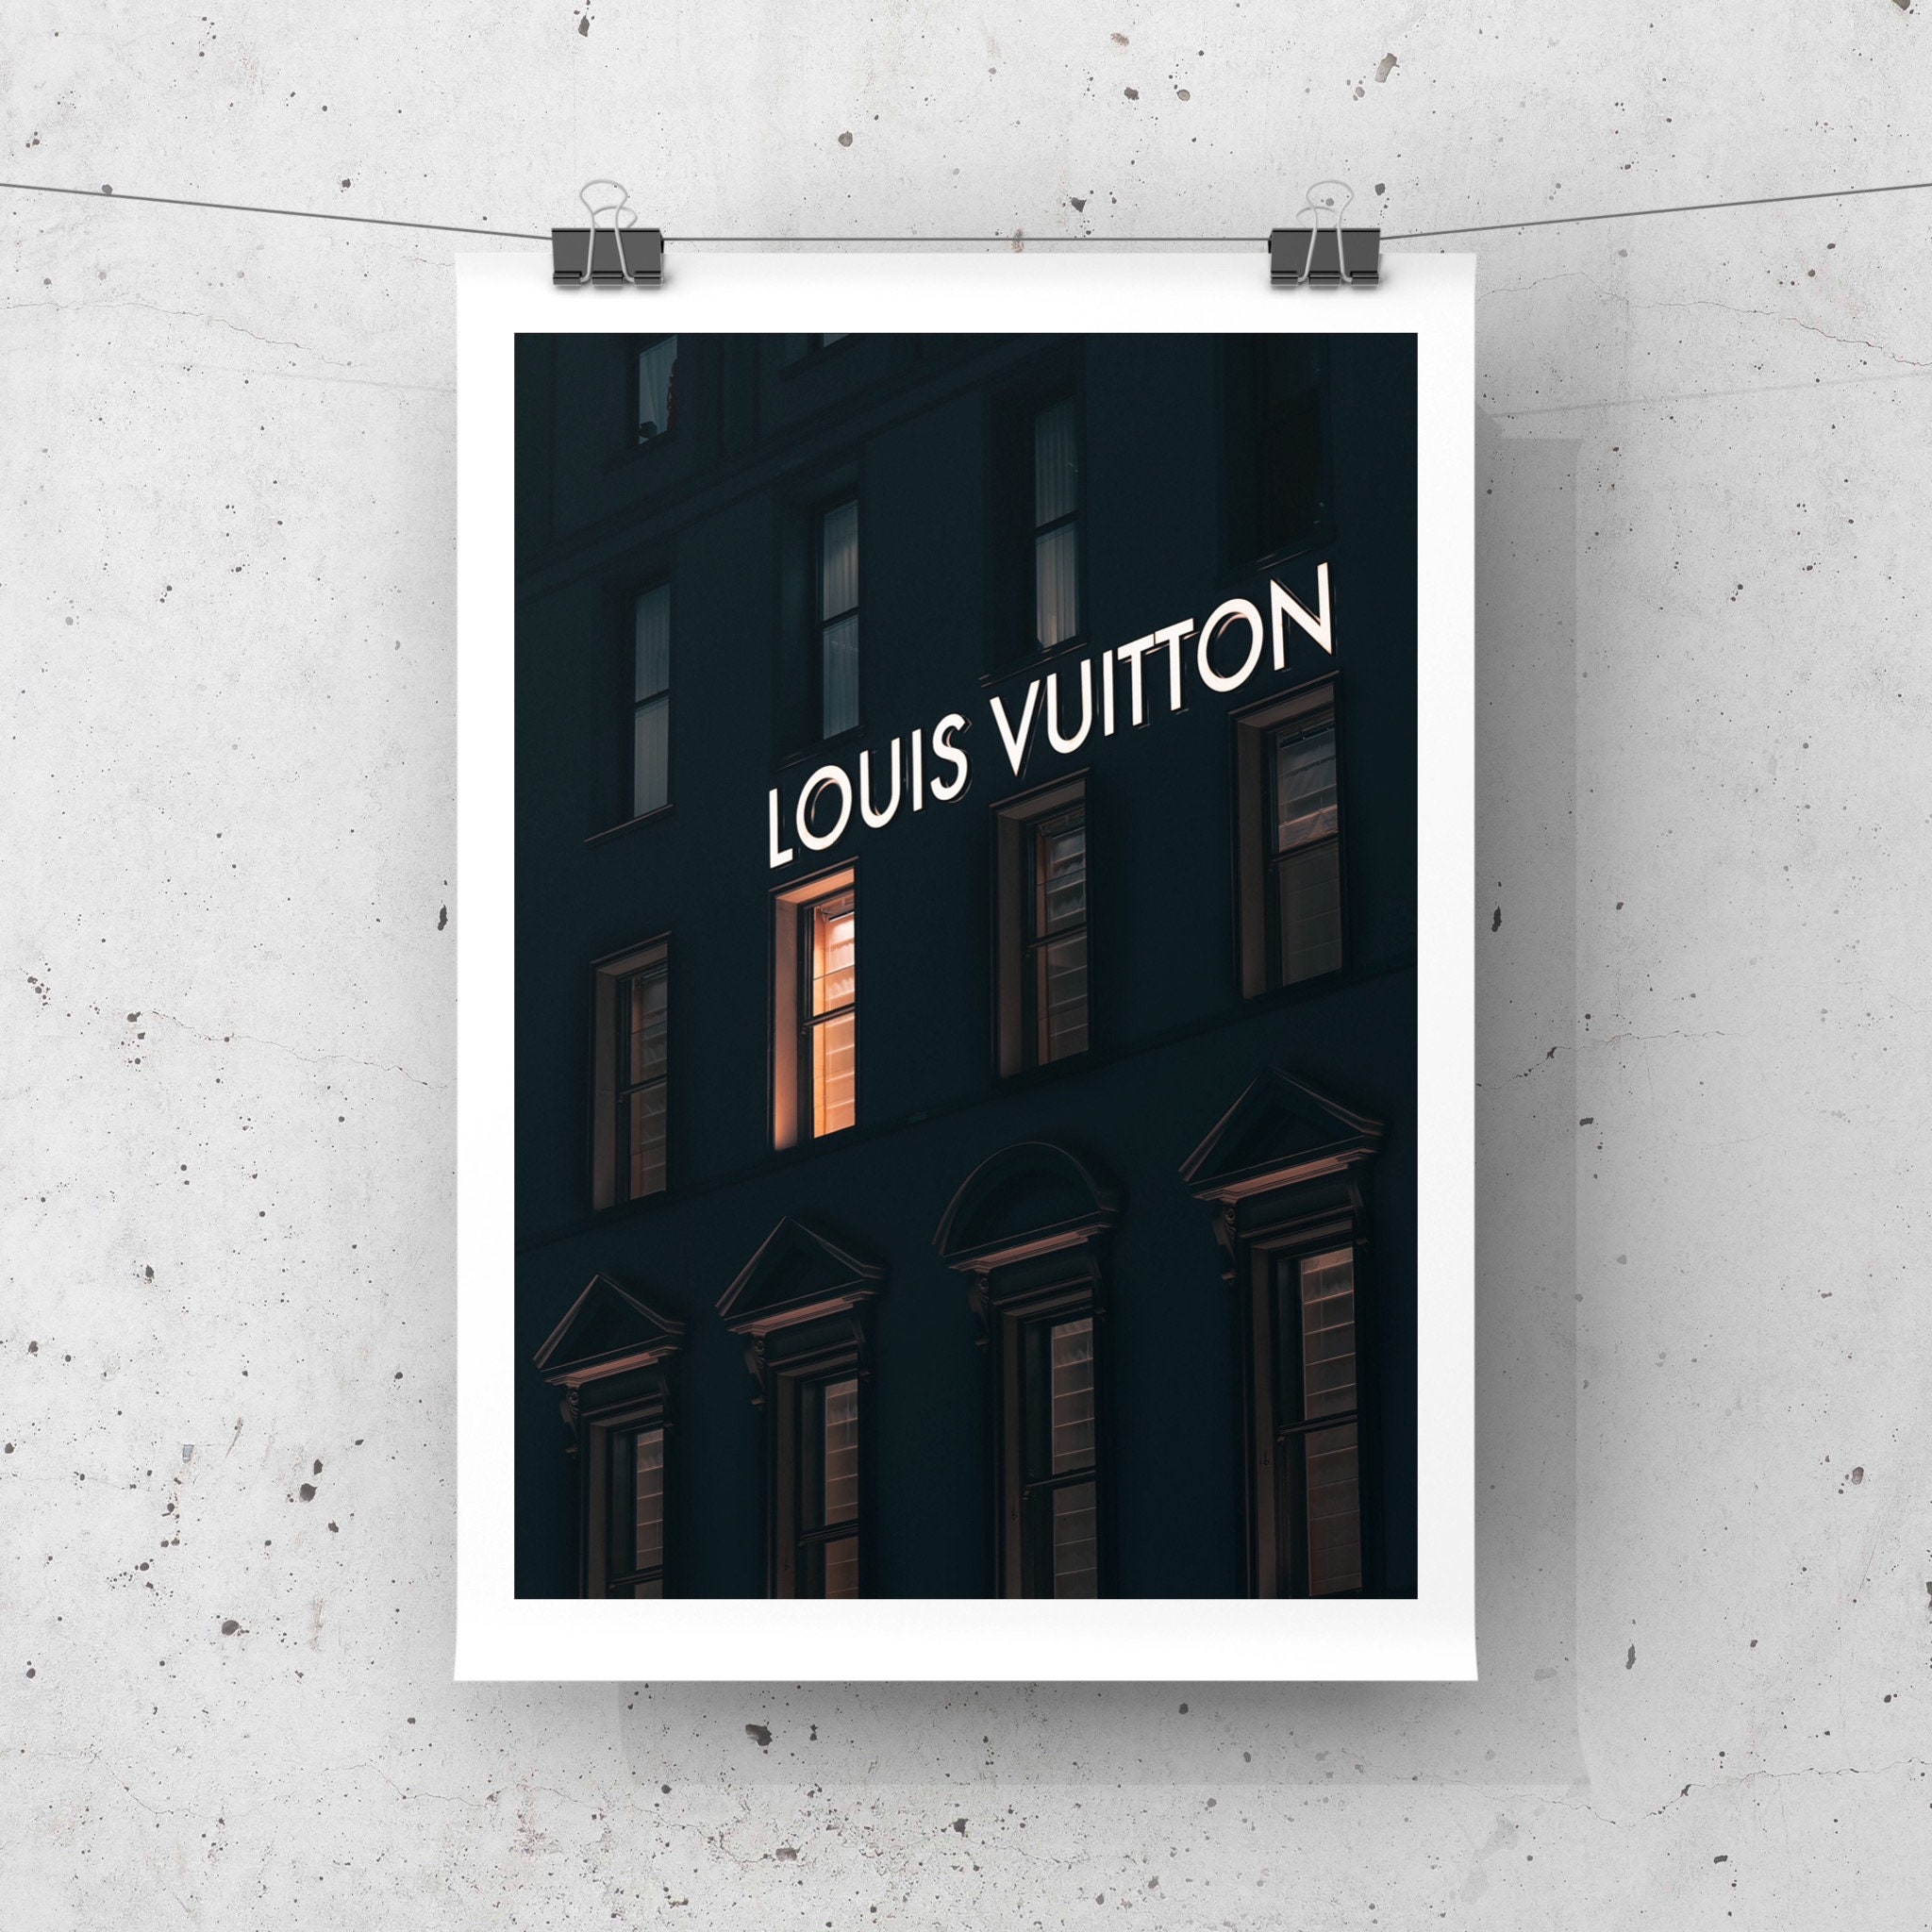 DIY Louis Vuitton Wall  $2 Home Decor 